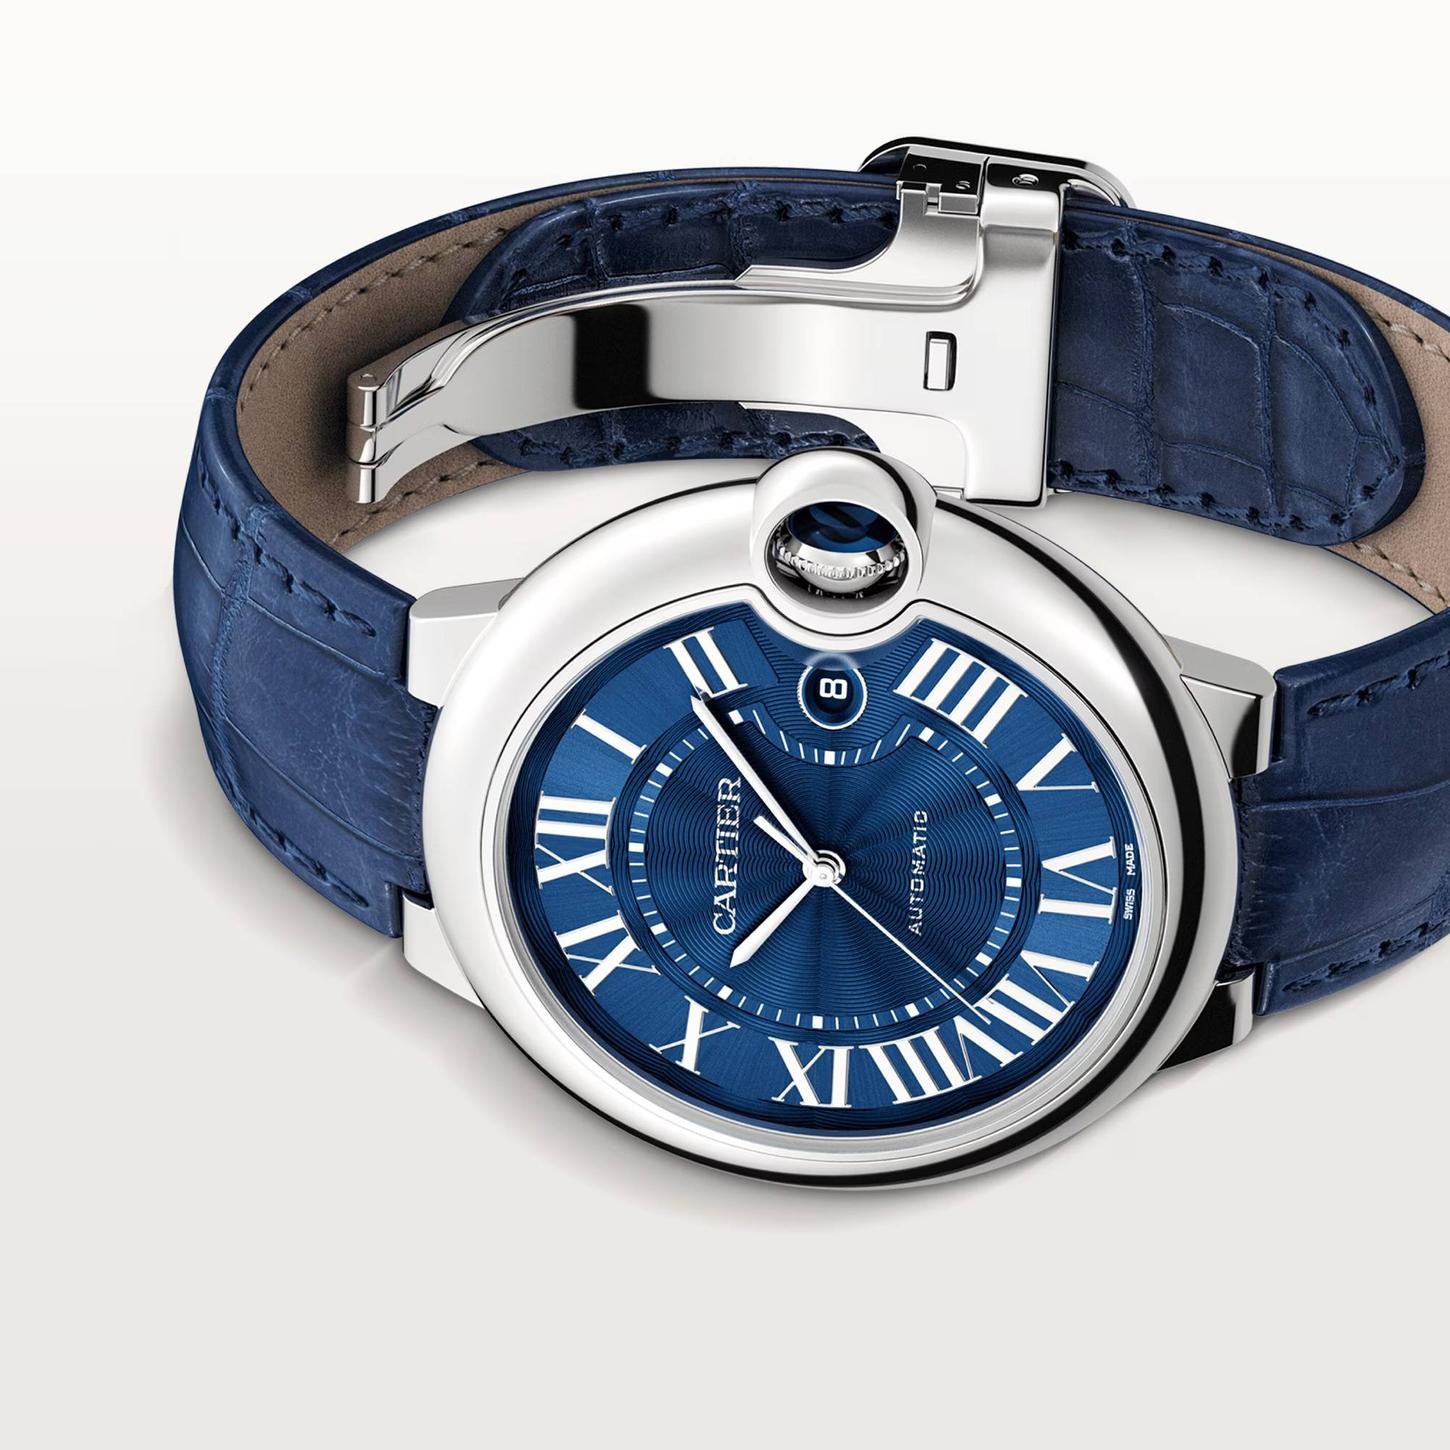 Ballon Blue de Cartier Watch, 42mm 0